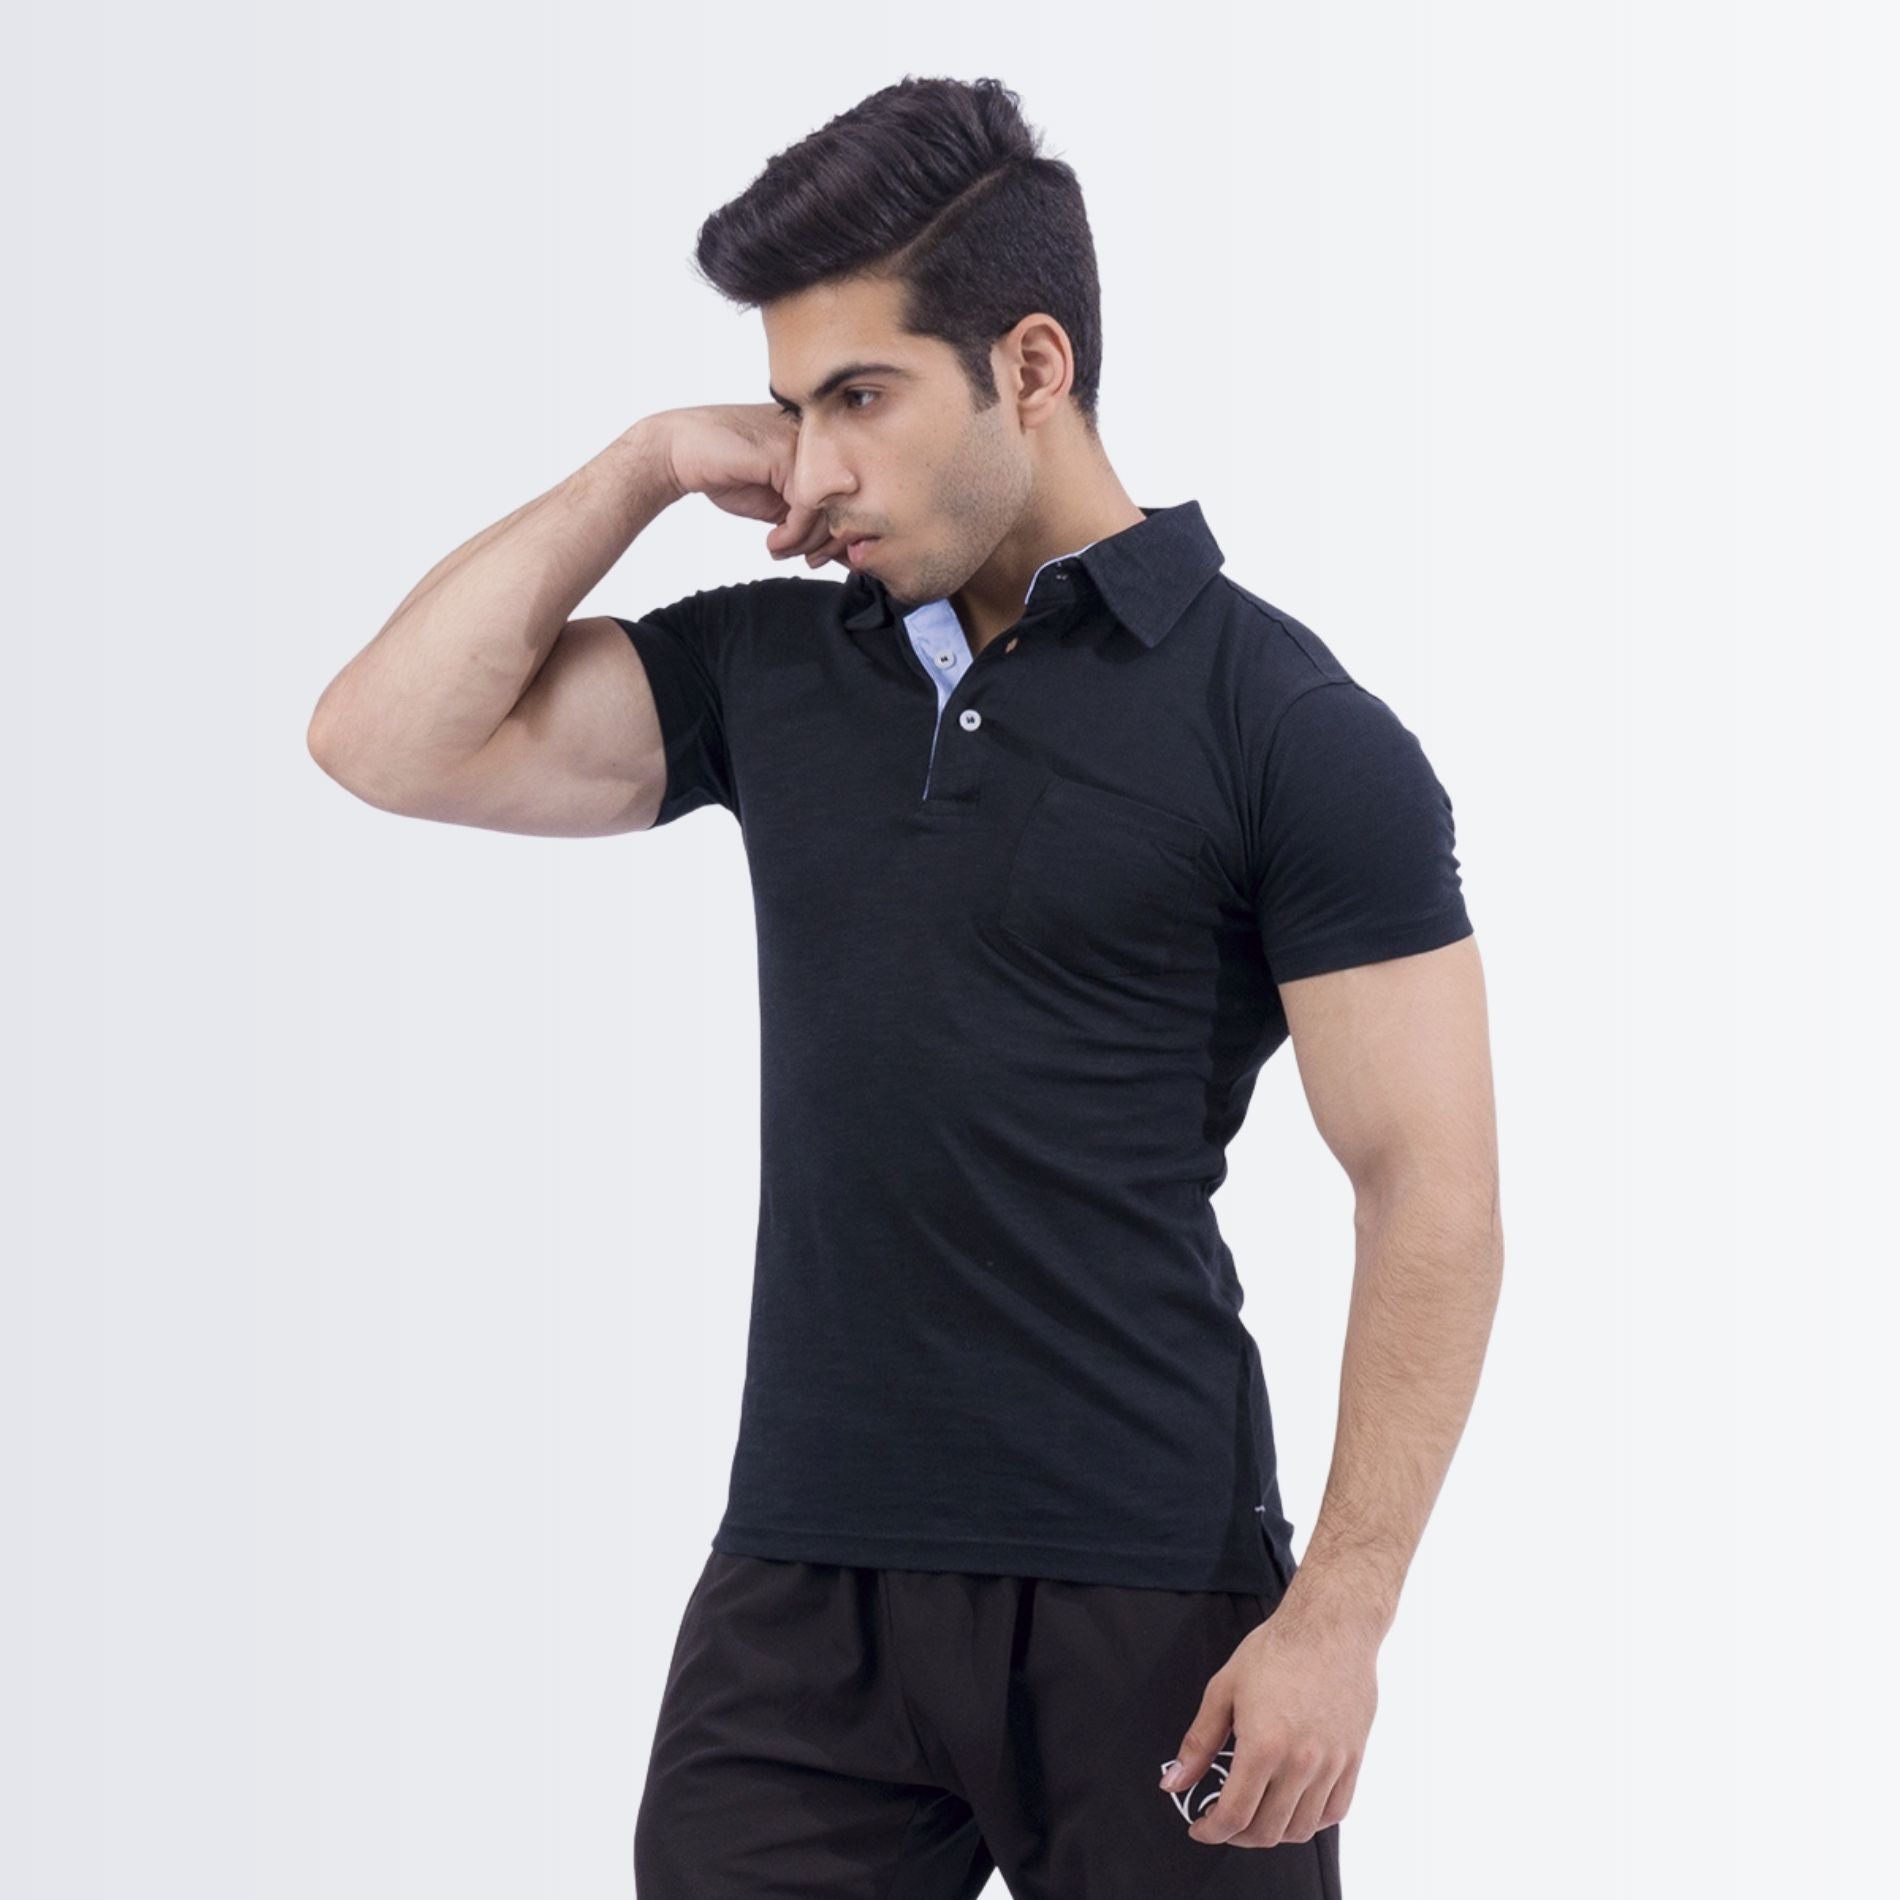 Stylish Black Polo Shirt